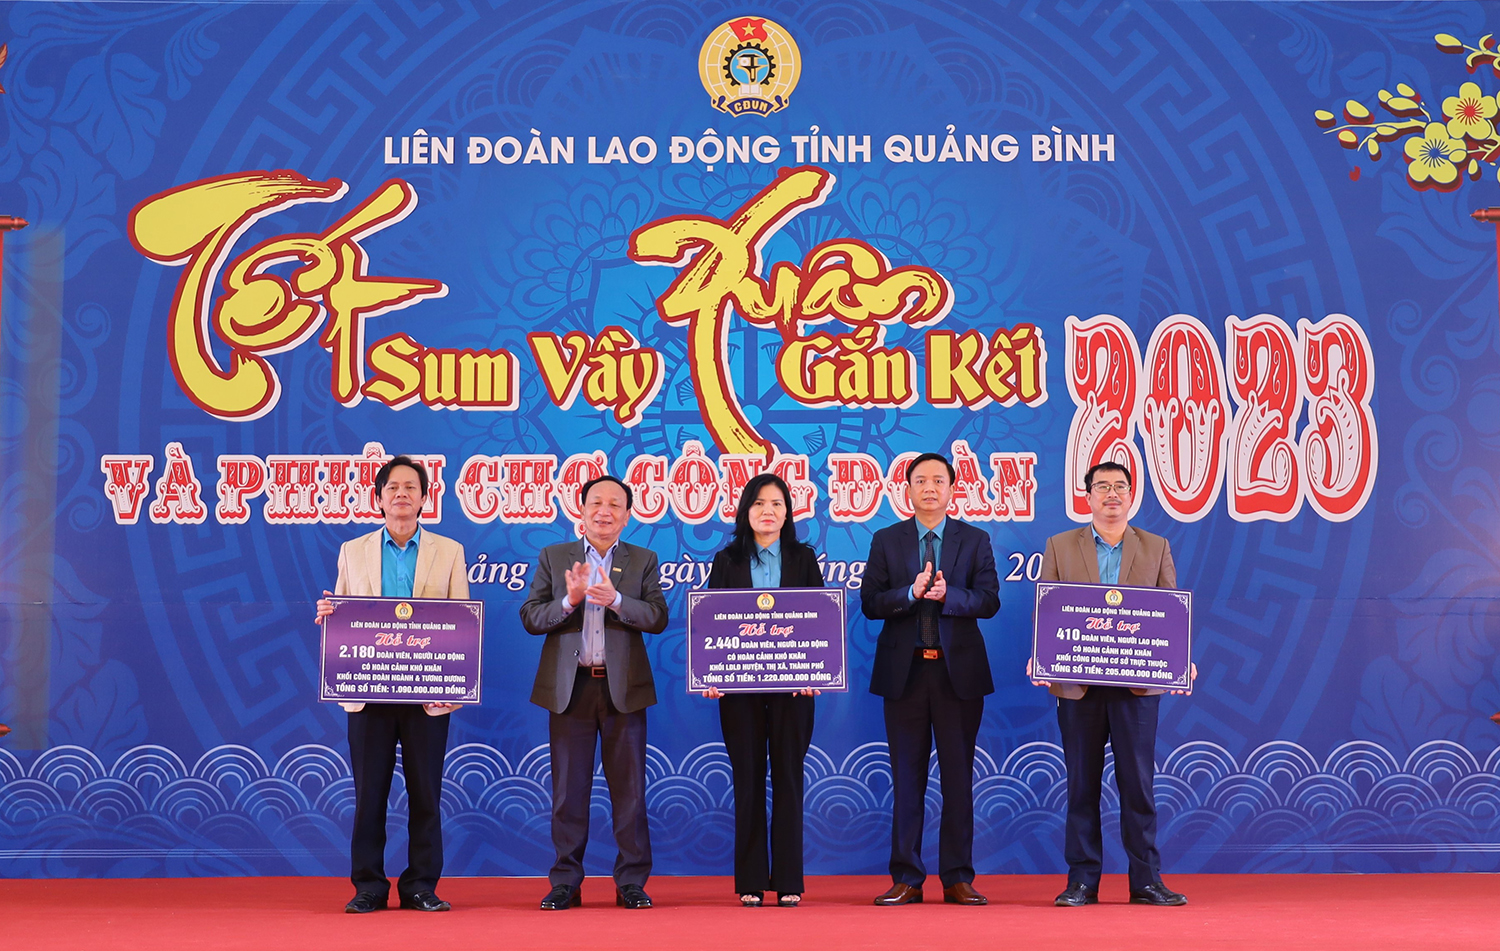 Đồng chí Phó Bí thư Thường trực Tỉnh ủy Trần Hải Châu và lãnh đạo LĐLĐ tỉnh trao hỗ trợ quà Tết cho đoàn viên, người lao động có hoàn cảnh khó khăn.